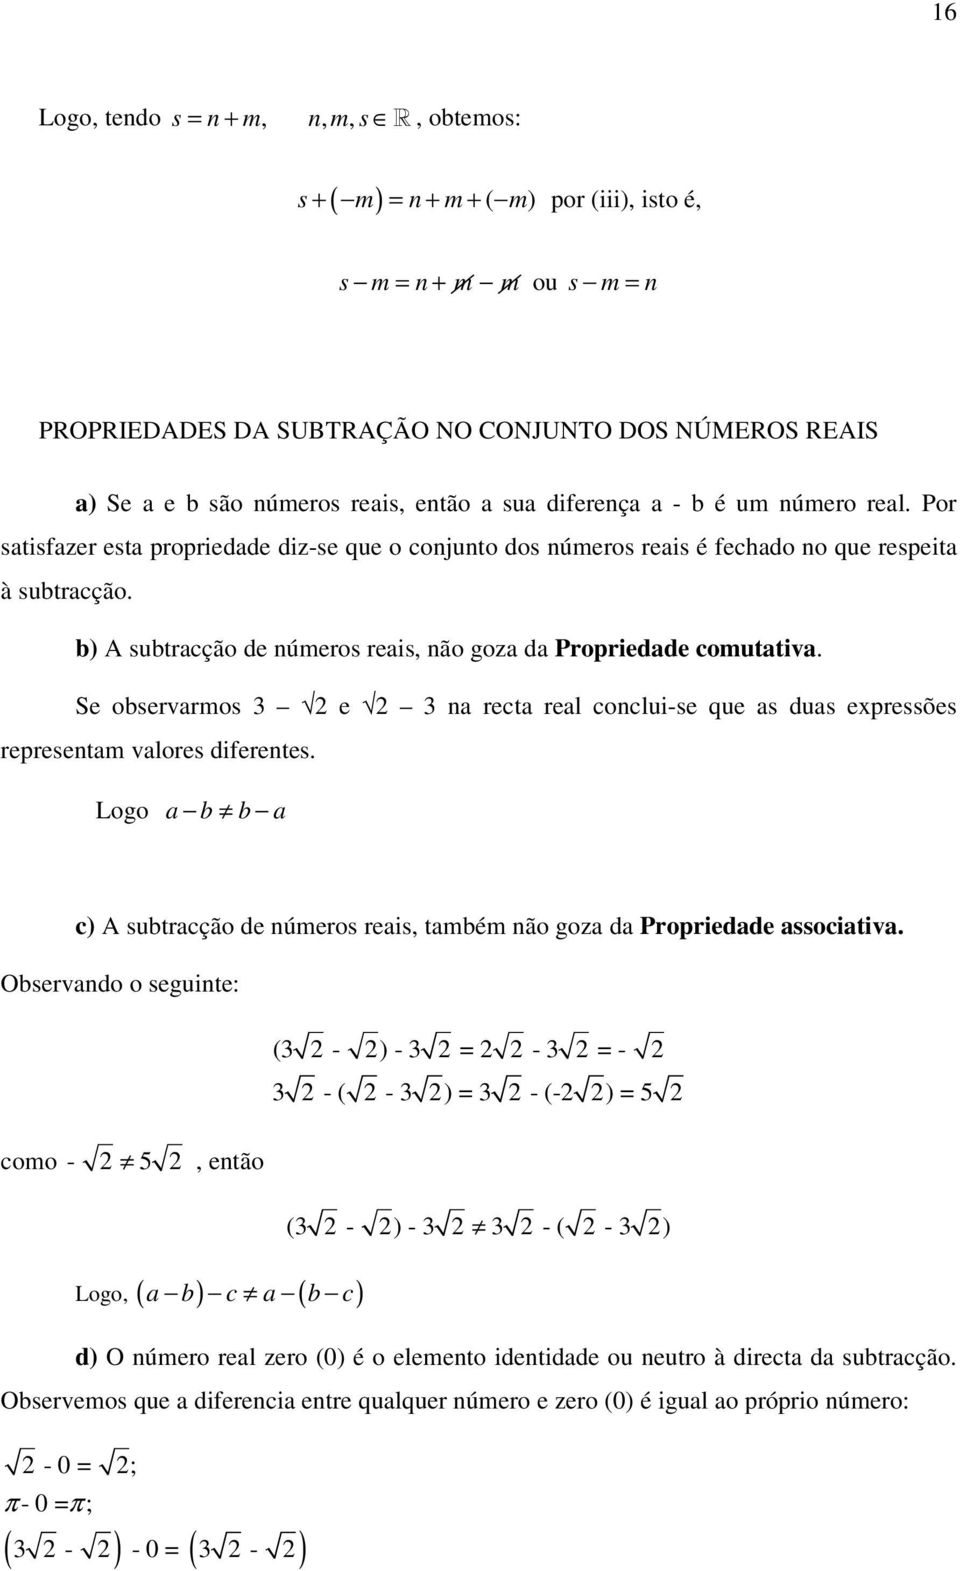 b) A subtracção de números reais, não goza da Propriedade comutativa. Se observarmos 3 e 3 na recta real conclui-se que as duas expressões representam valores diferentes.